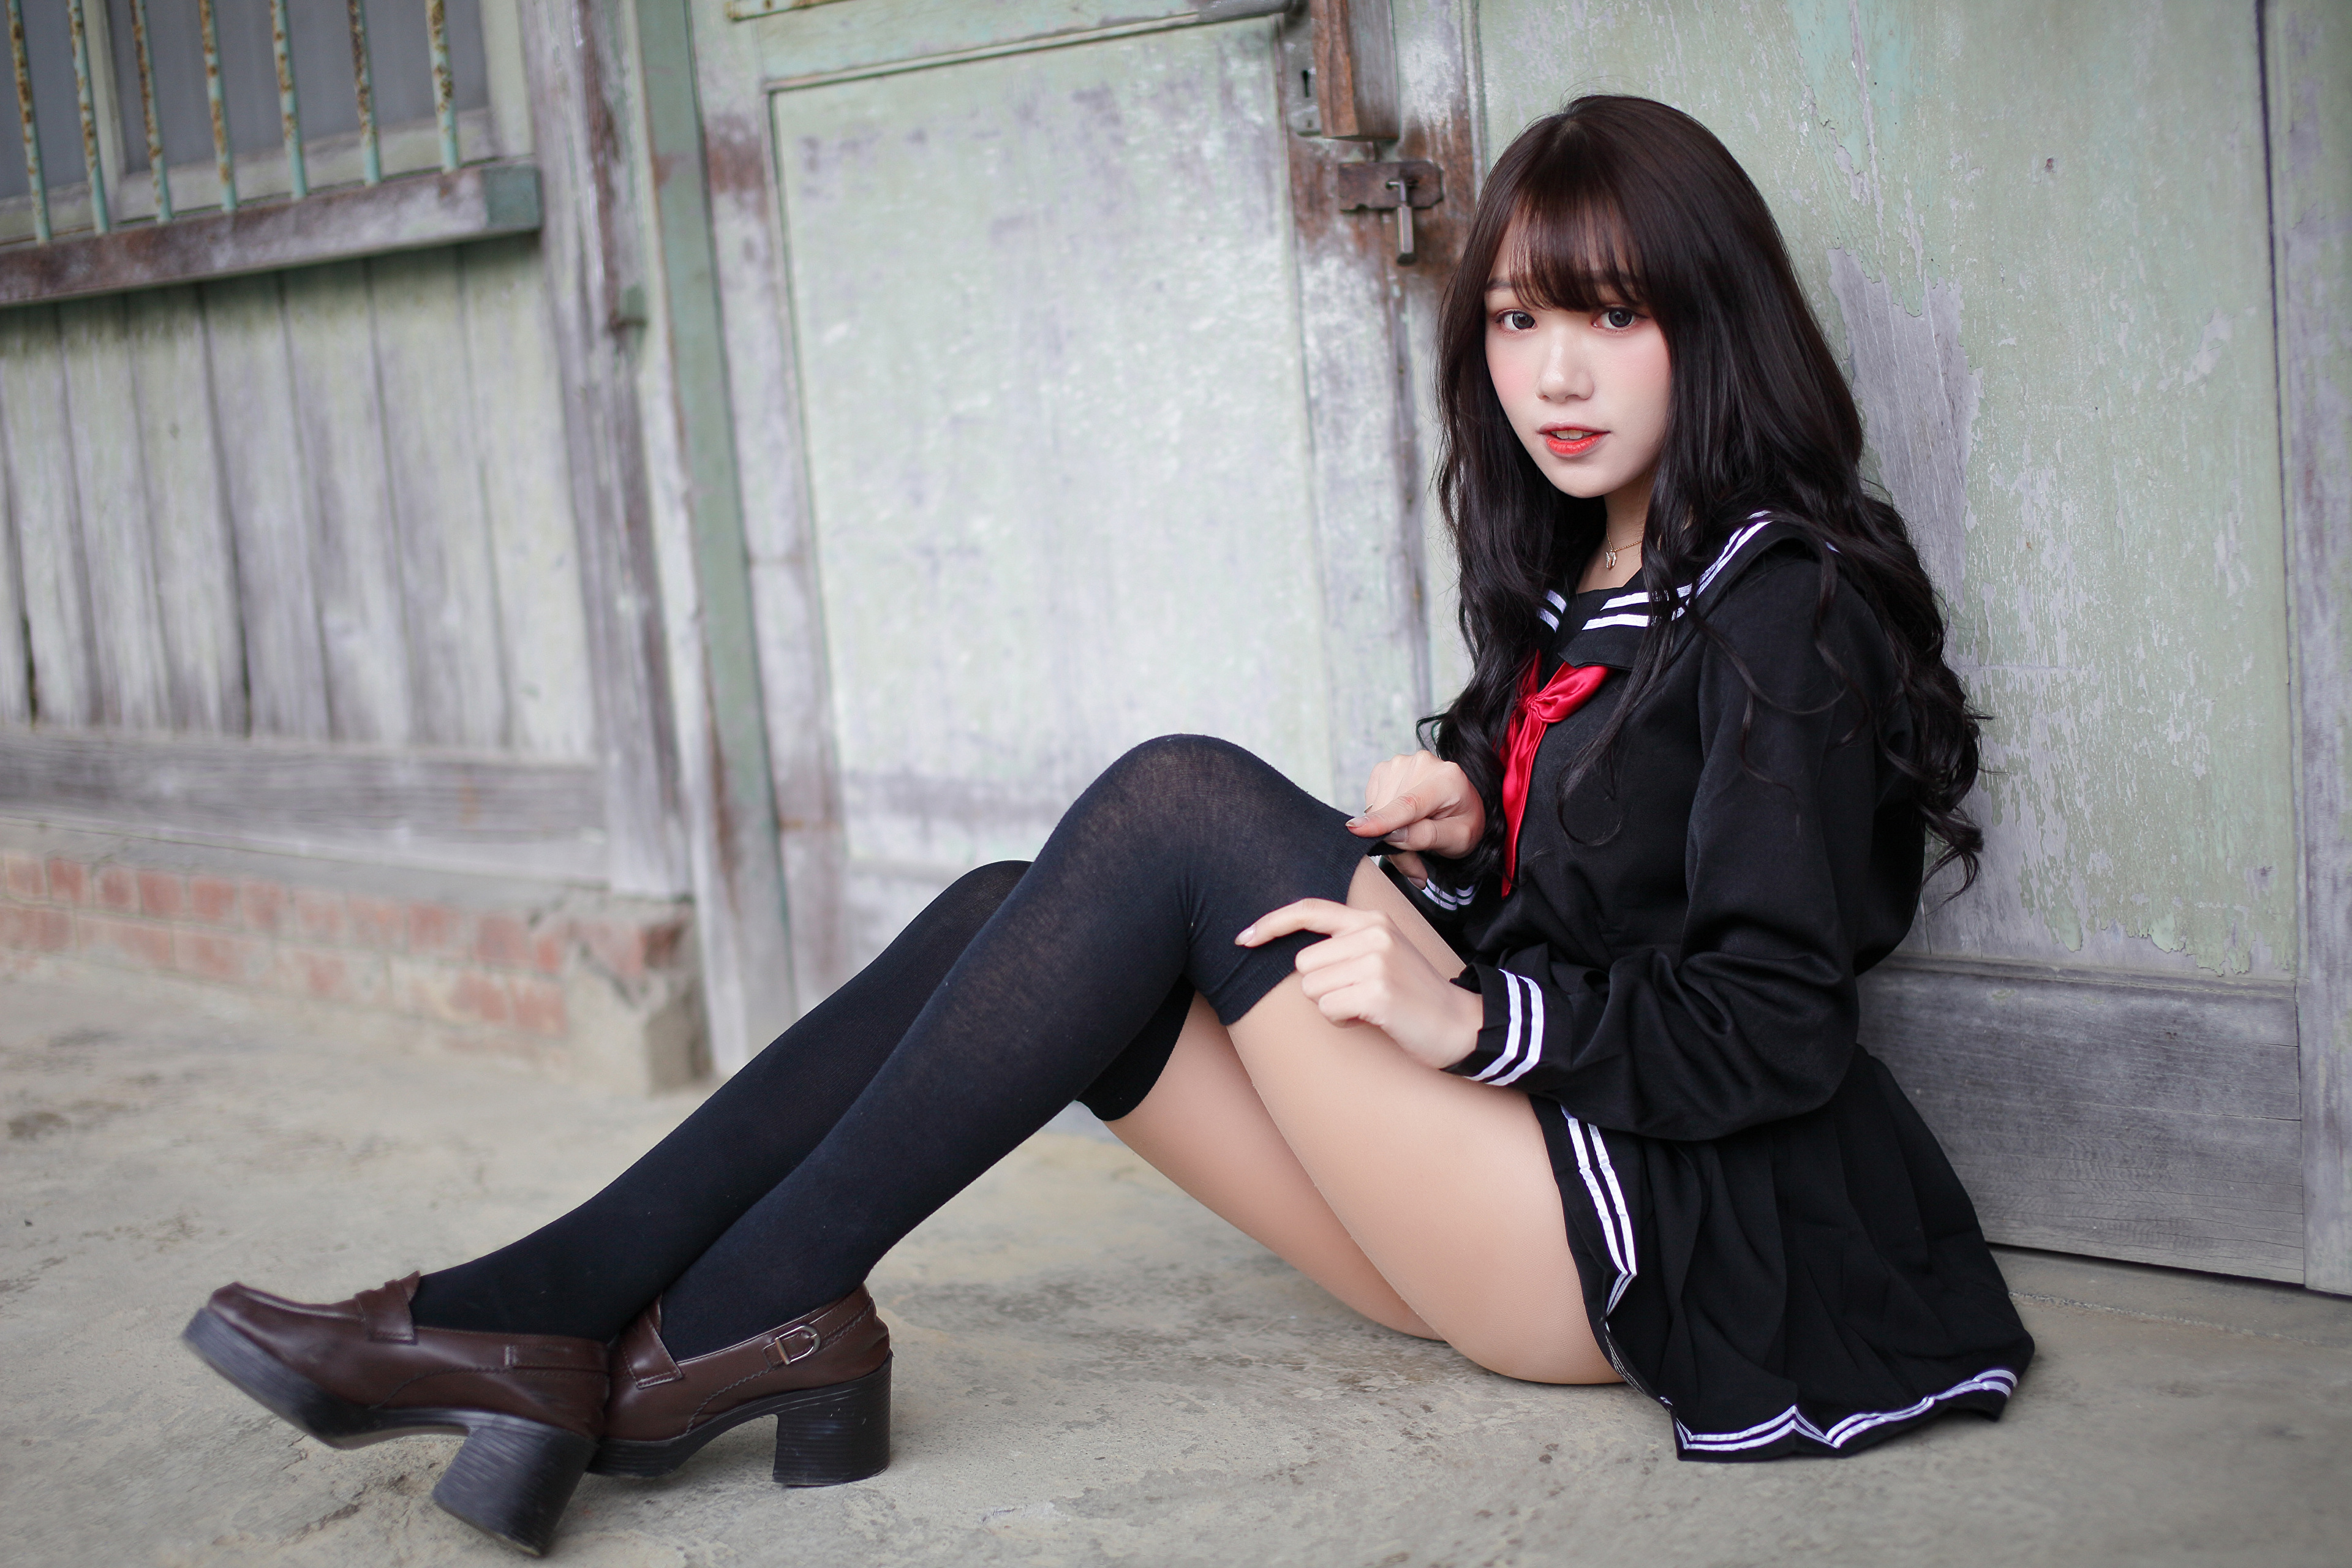 Asian Model Women Long Hair Dark Hair Knee High Socks Sailor Uniform Vicky Asian Model 3840x2560